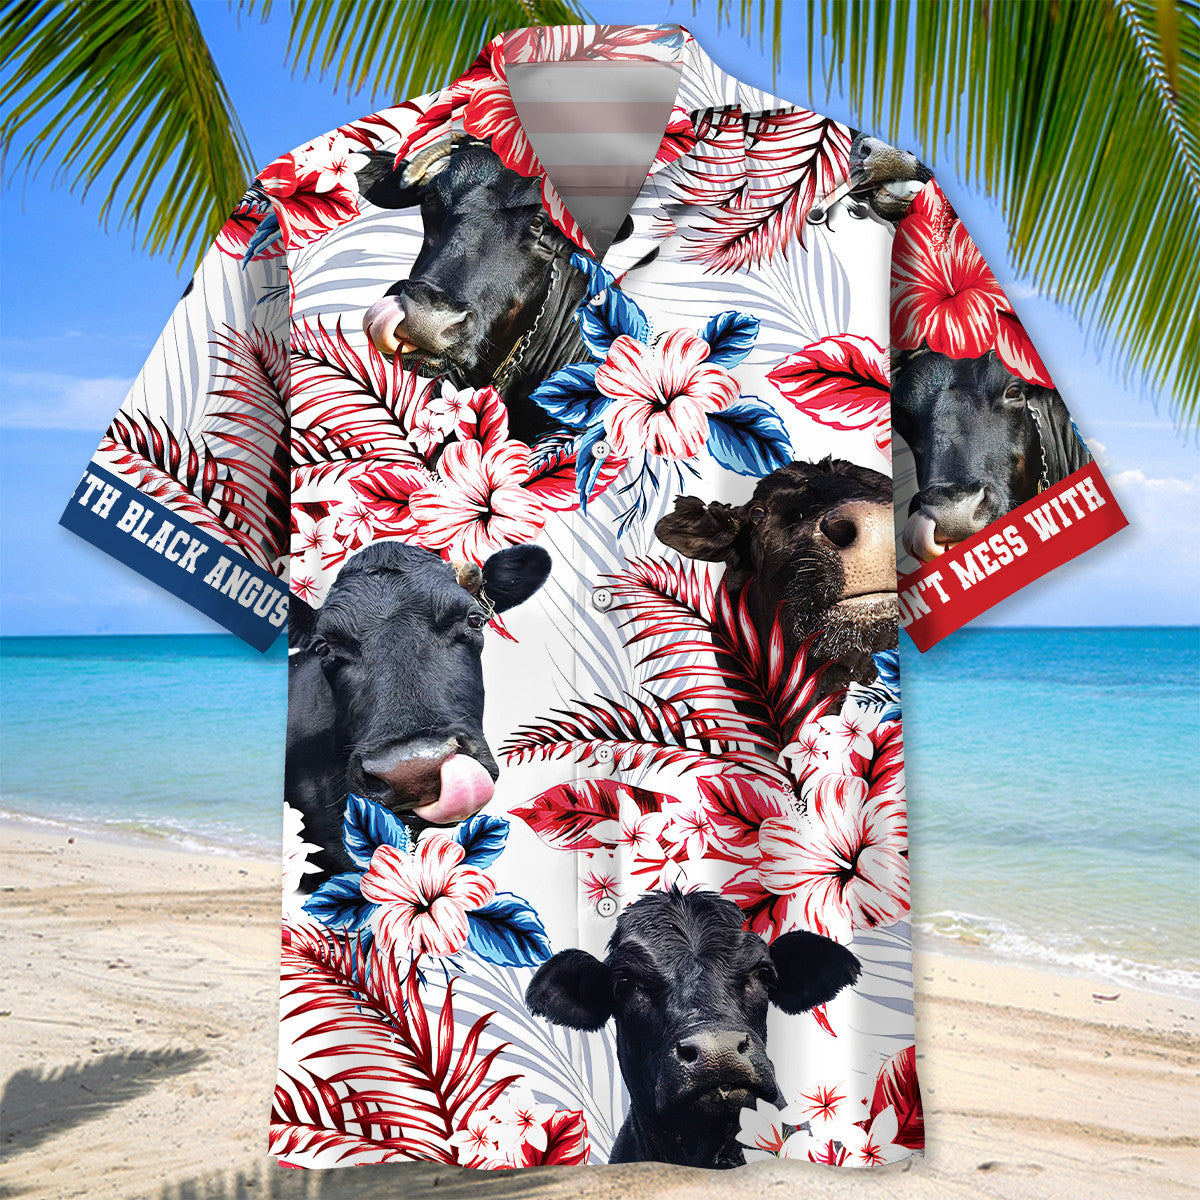 Don't Mess With Black Angus Hawaiian Shirt